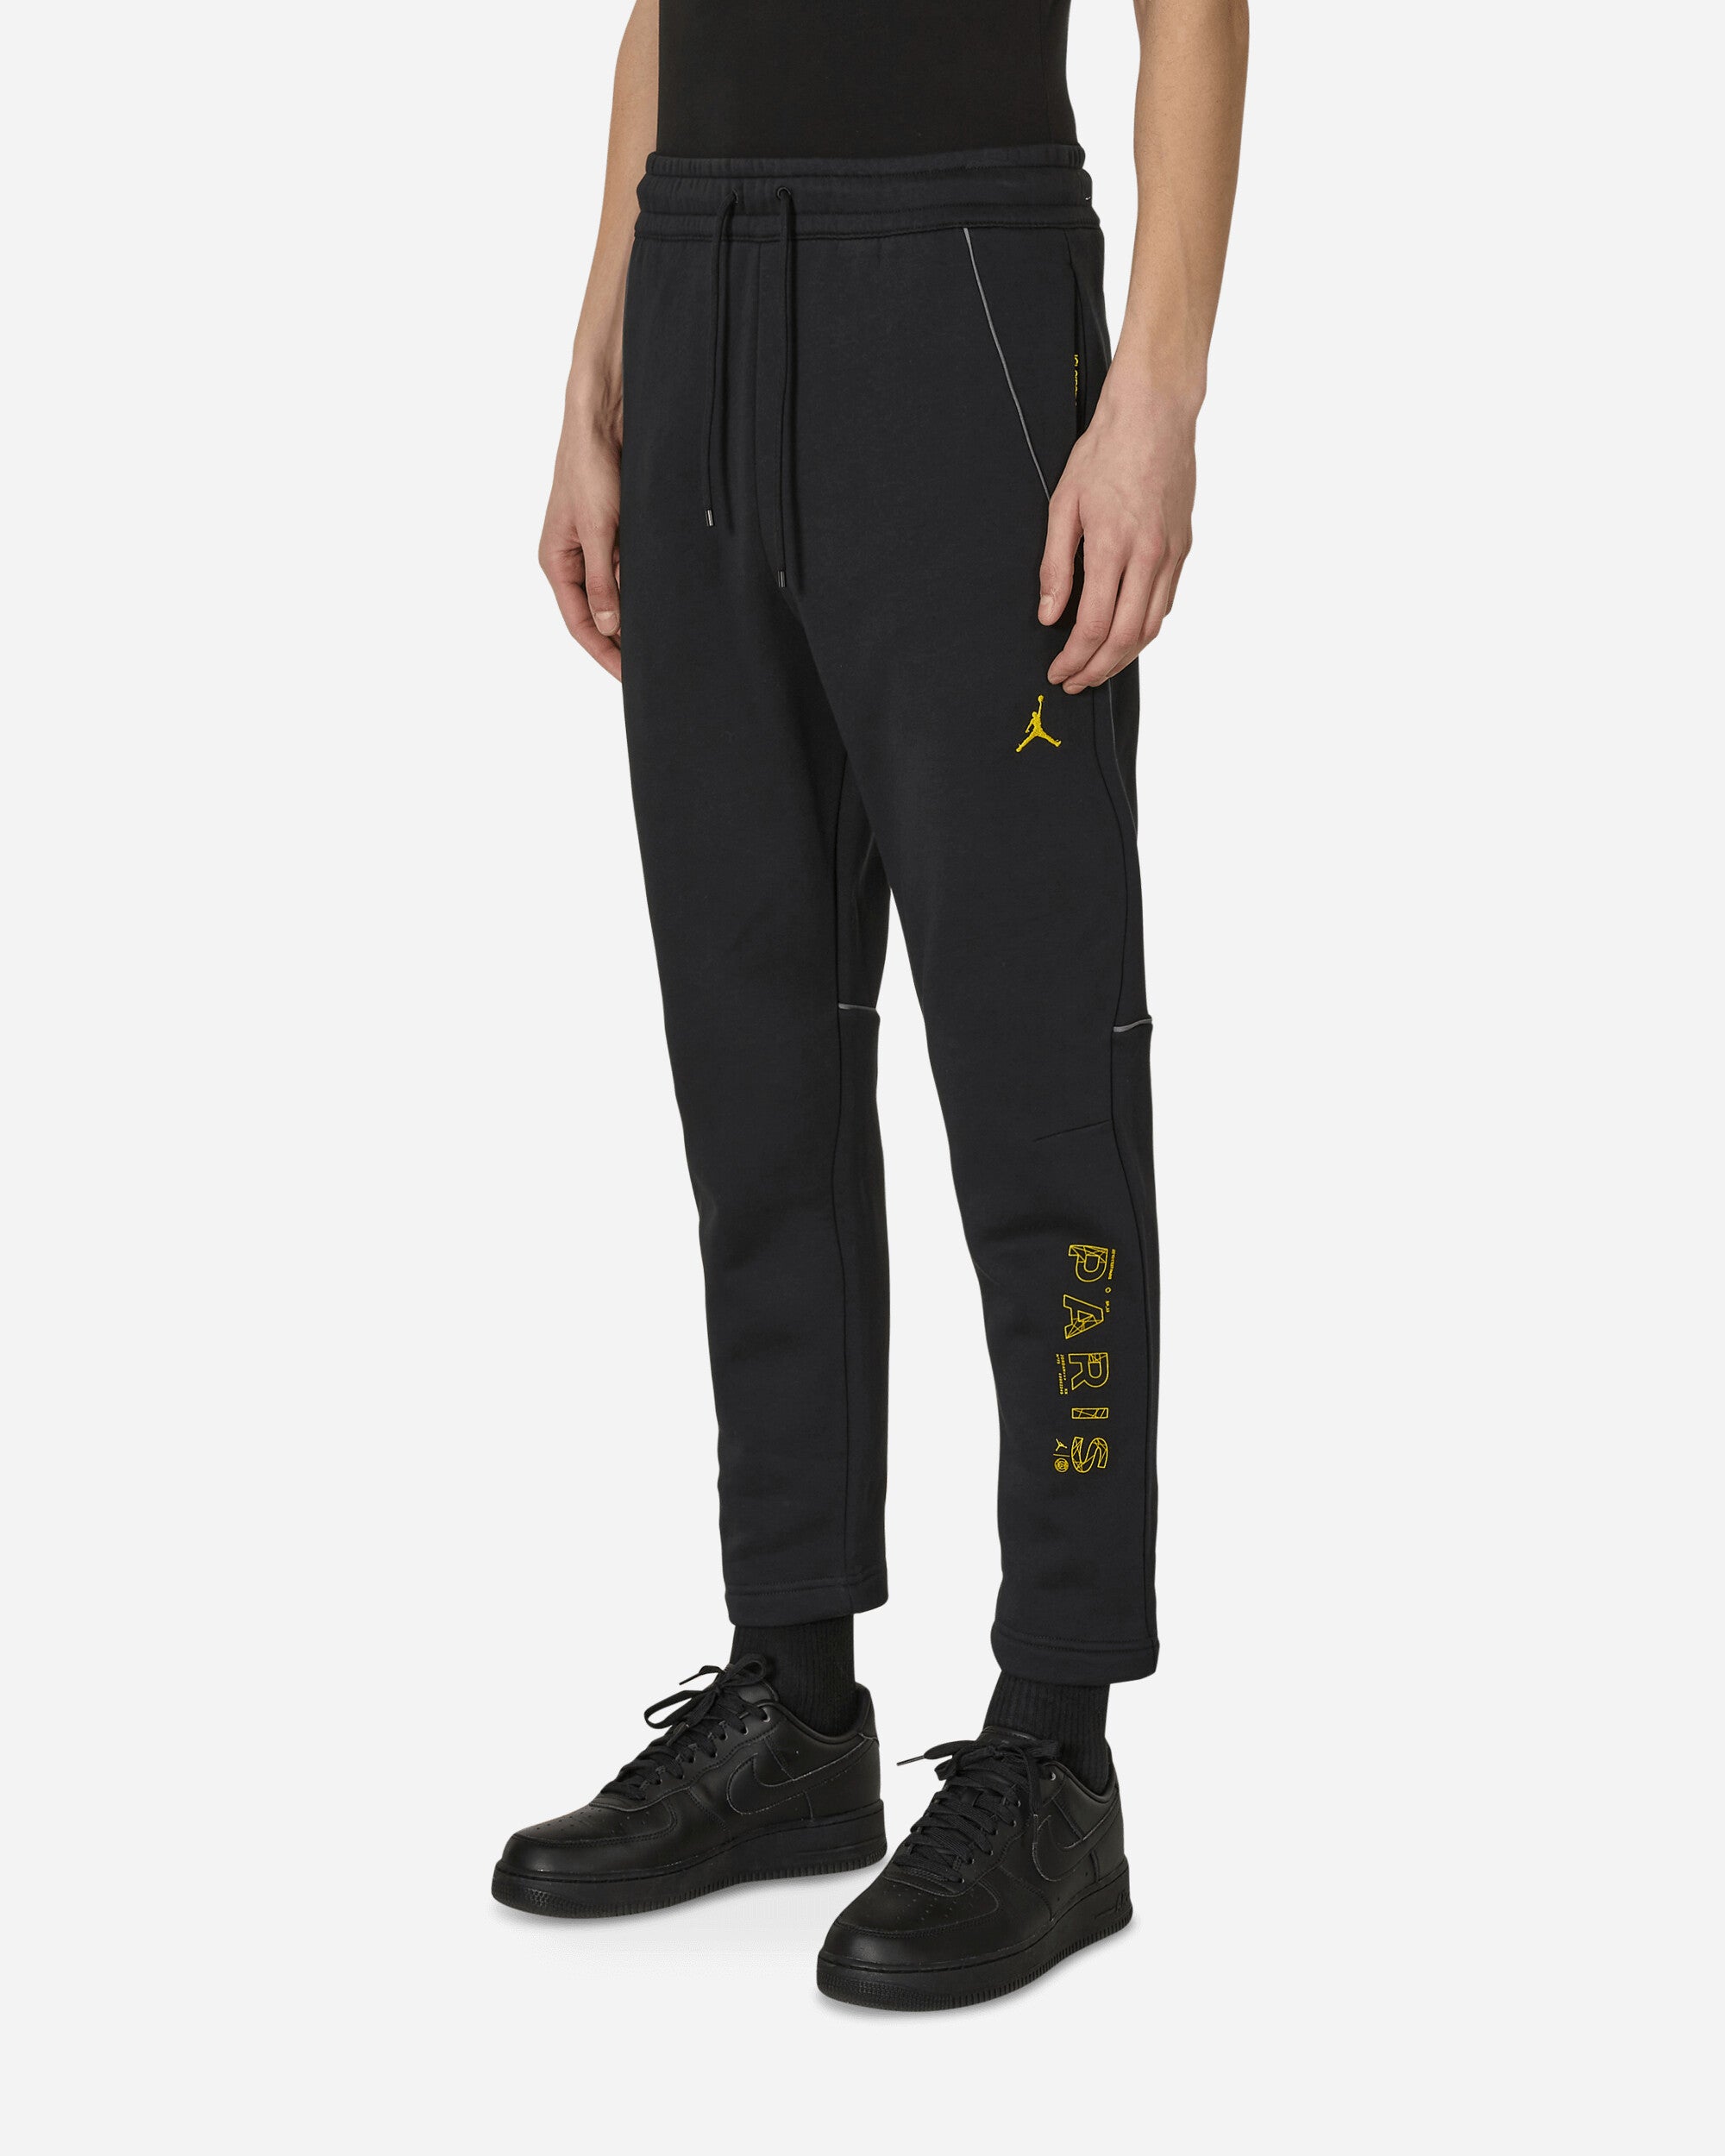 Nike Jordan Psg Flc Pant Black/Tour Yellow Pants Trousers DV0621-010